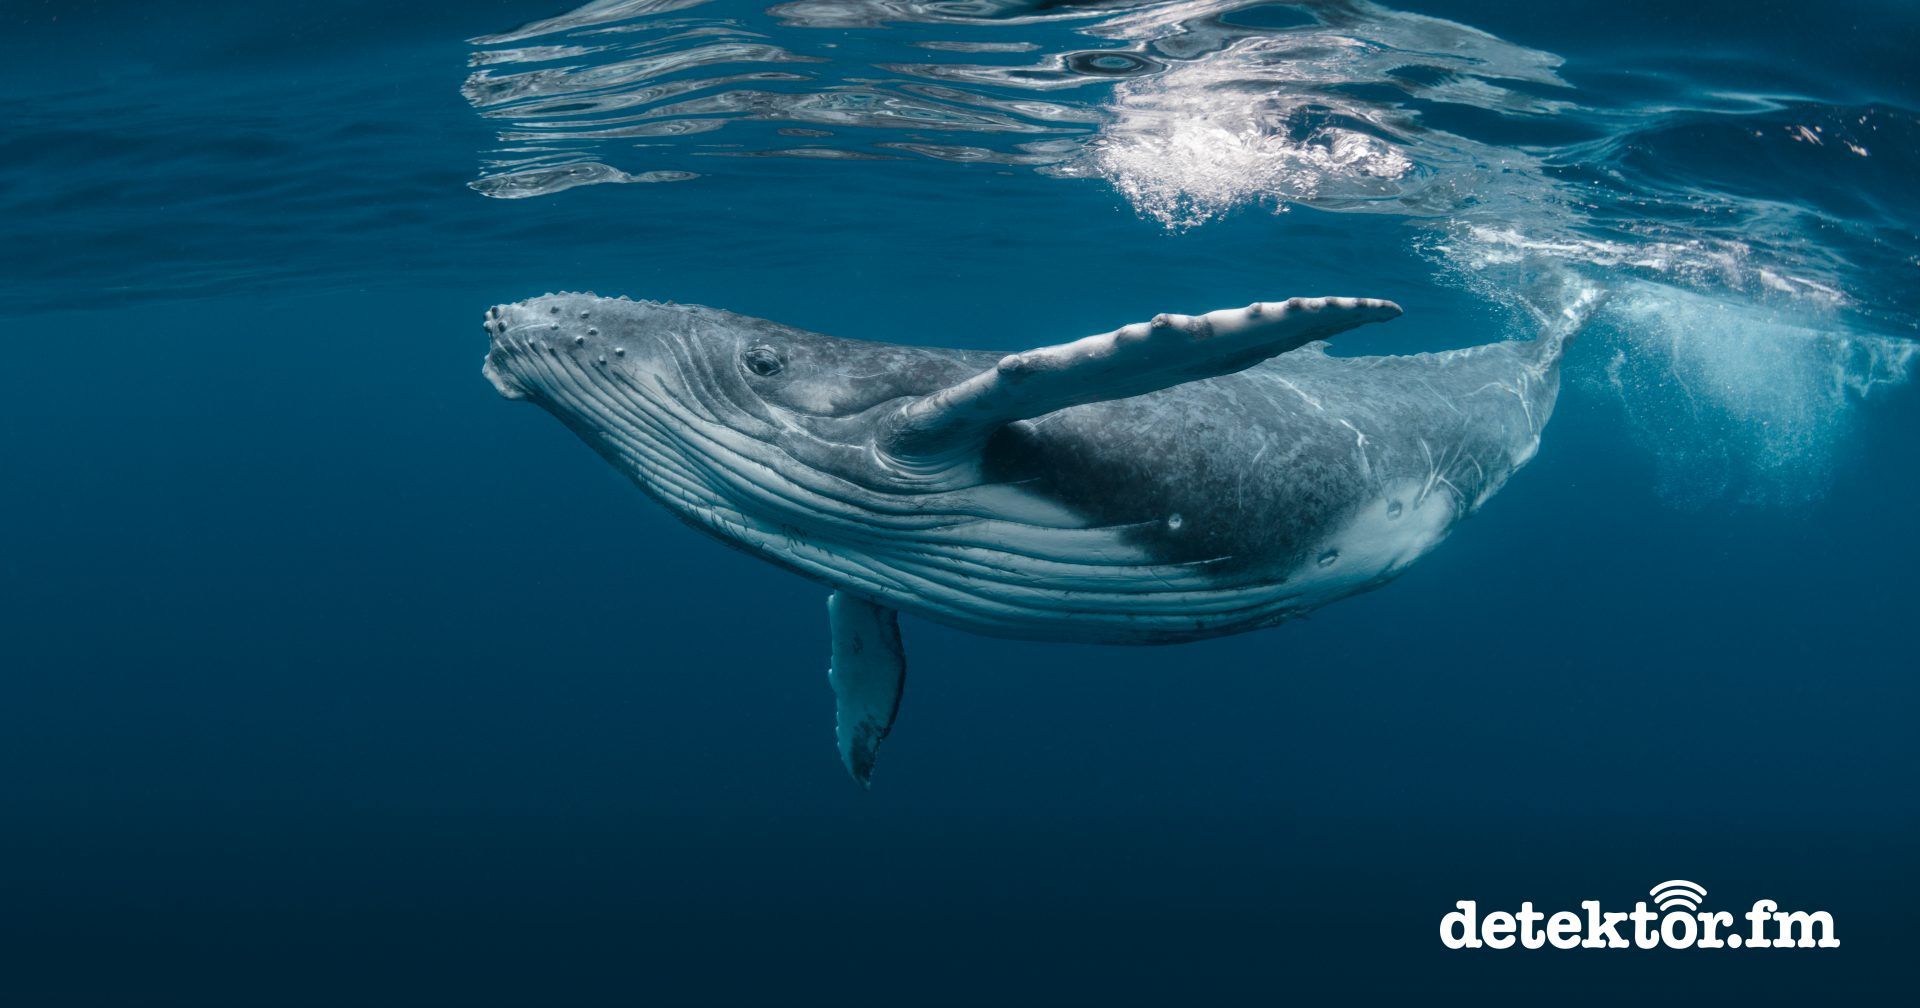 Forschungsquartett | Wale schützen mit KI | detektor.fm - Das Podcast-Radio